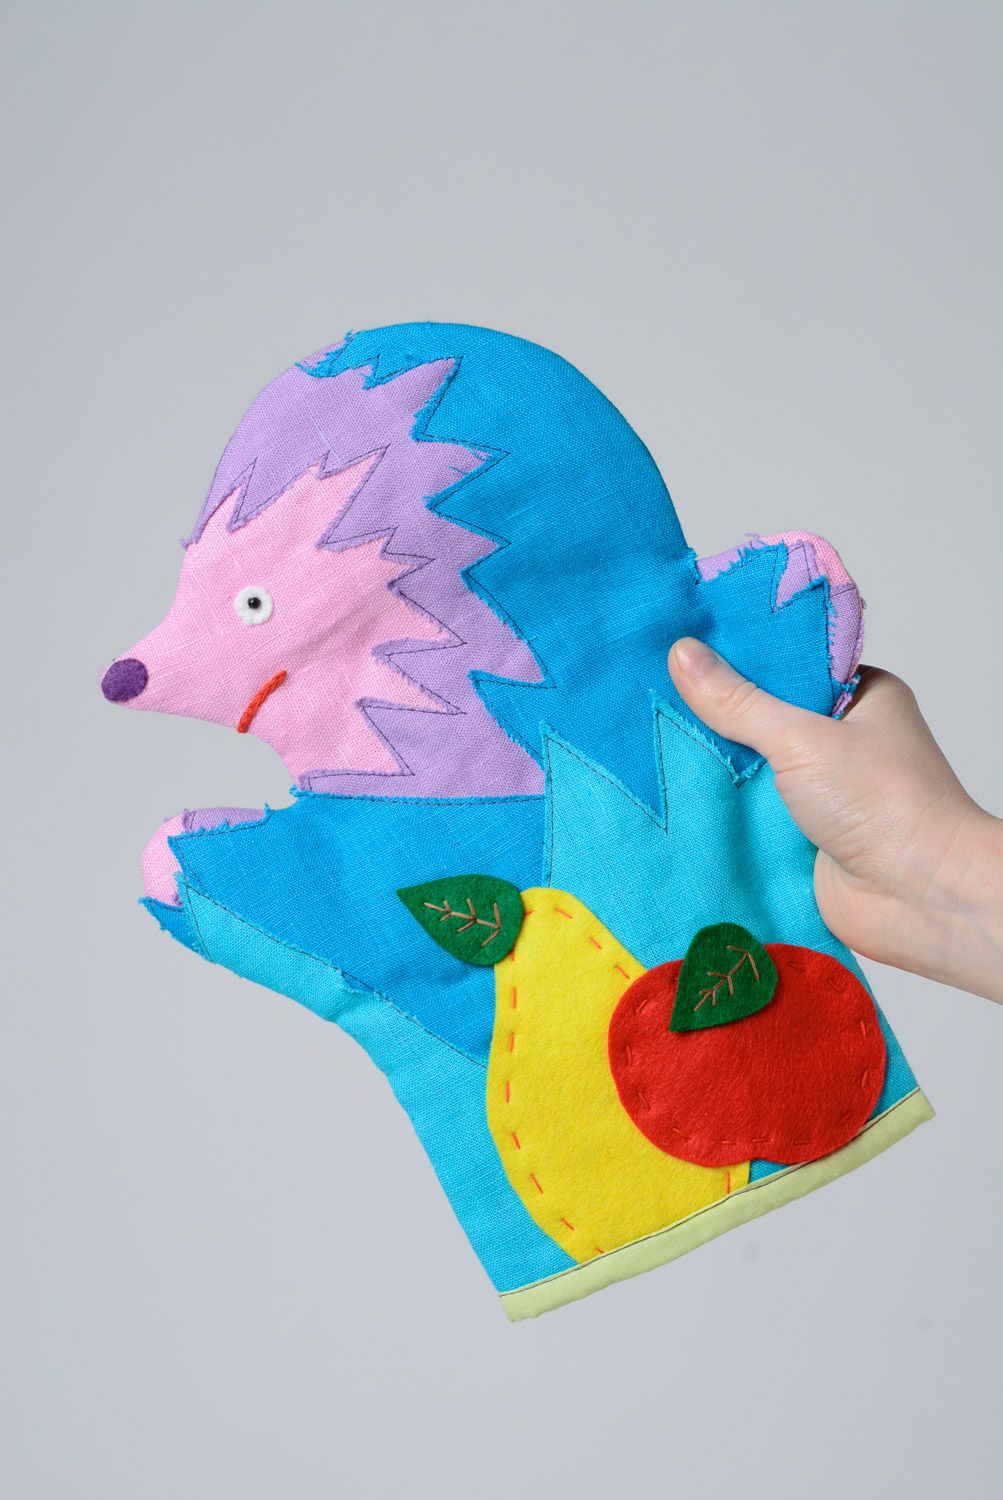 Смешная игрушка на руку для кукольного театра из разноцветных тканей Ежик фото 1